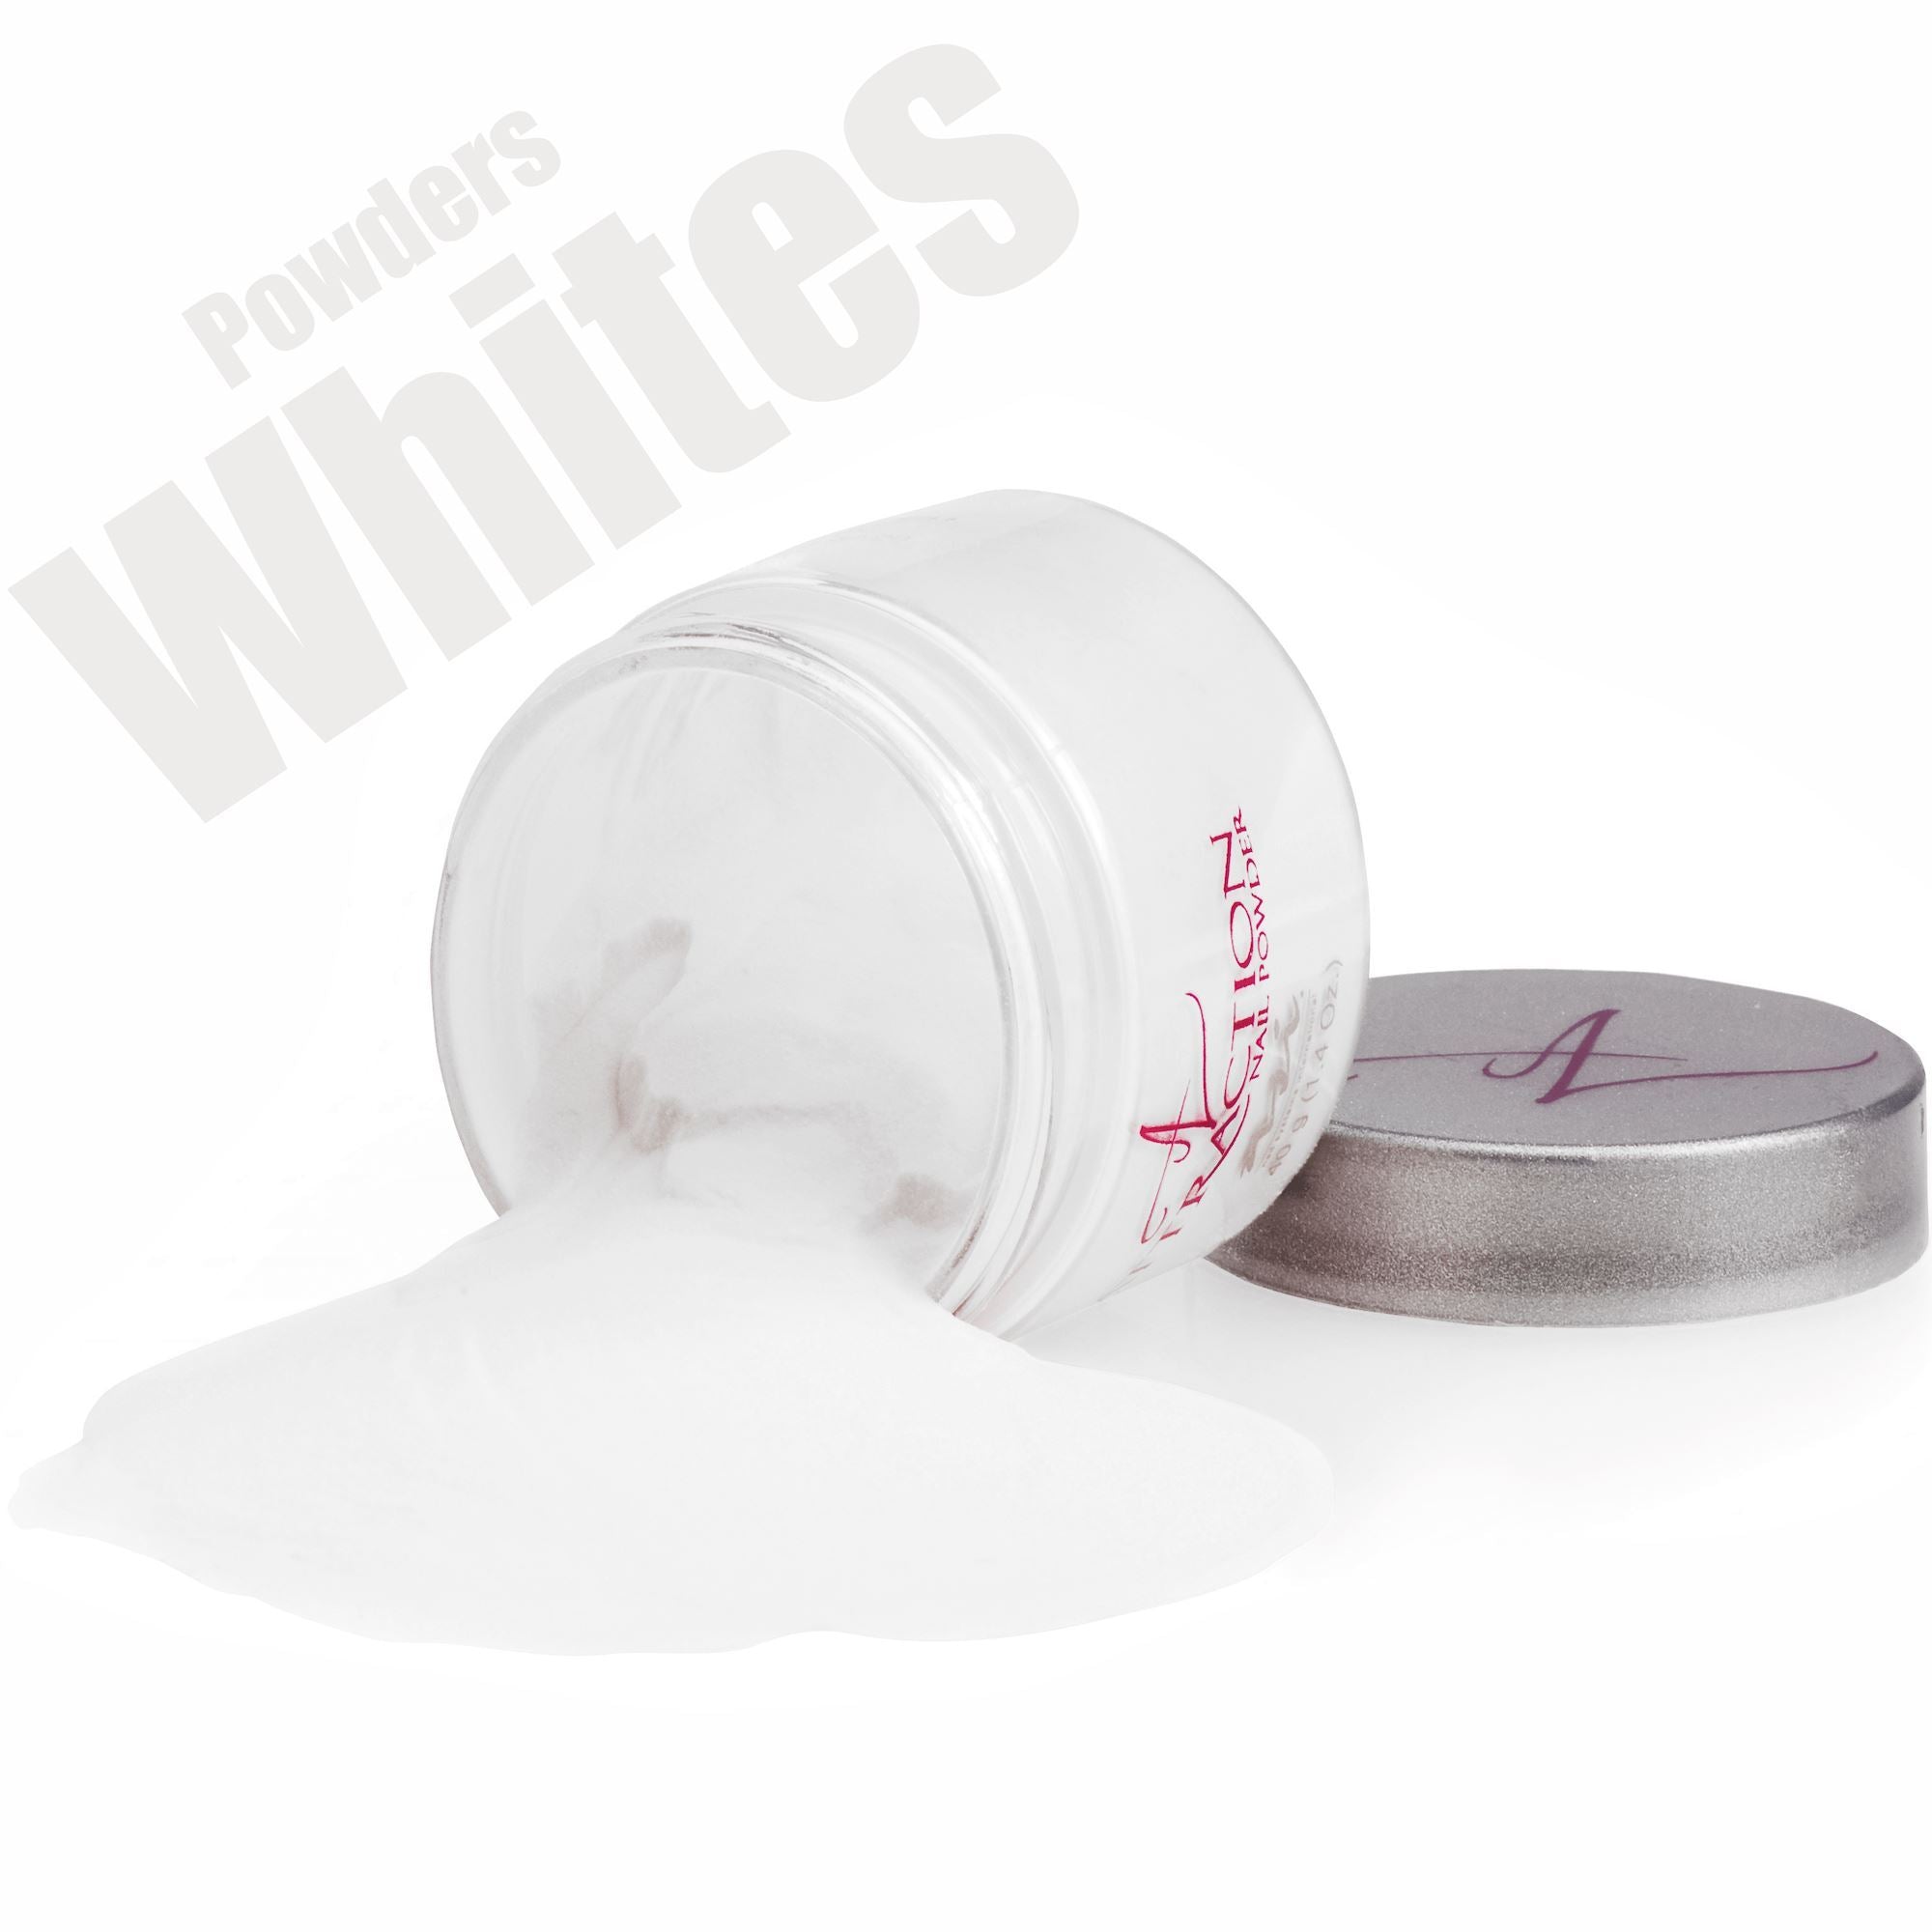 White Acrylic Powders - NSI Australia